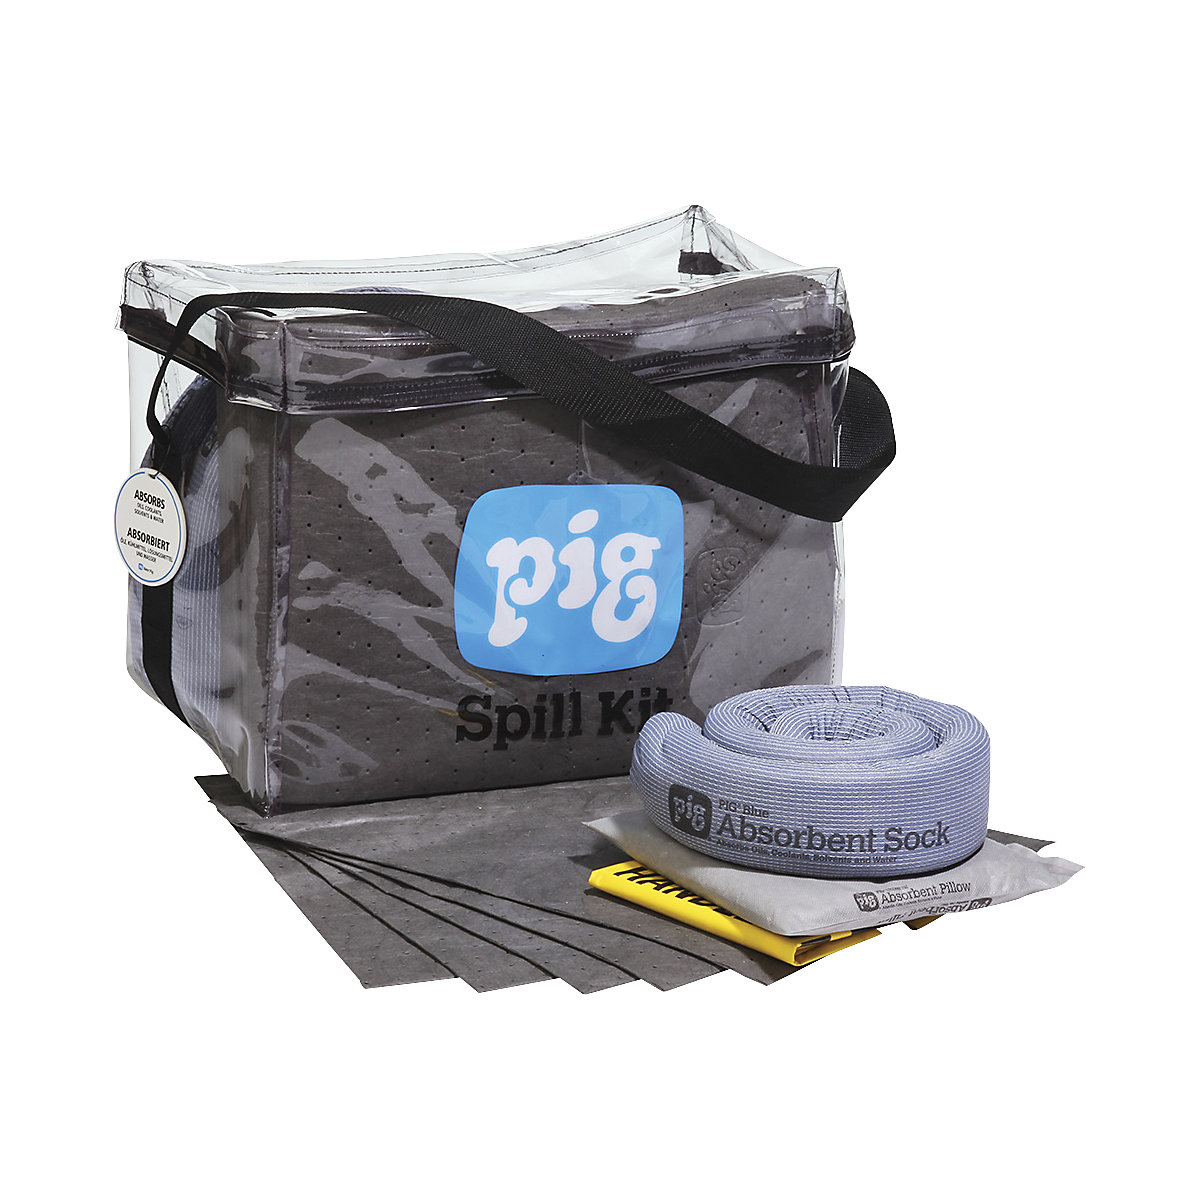 Emergency kit in a transparent bag – PIG